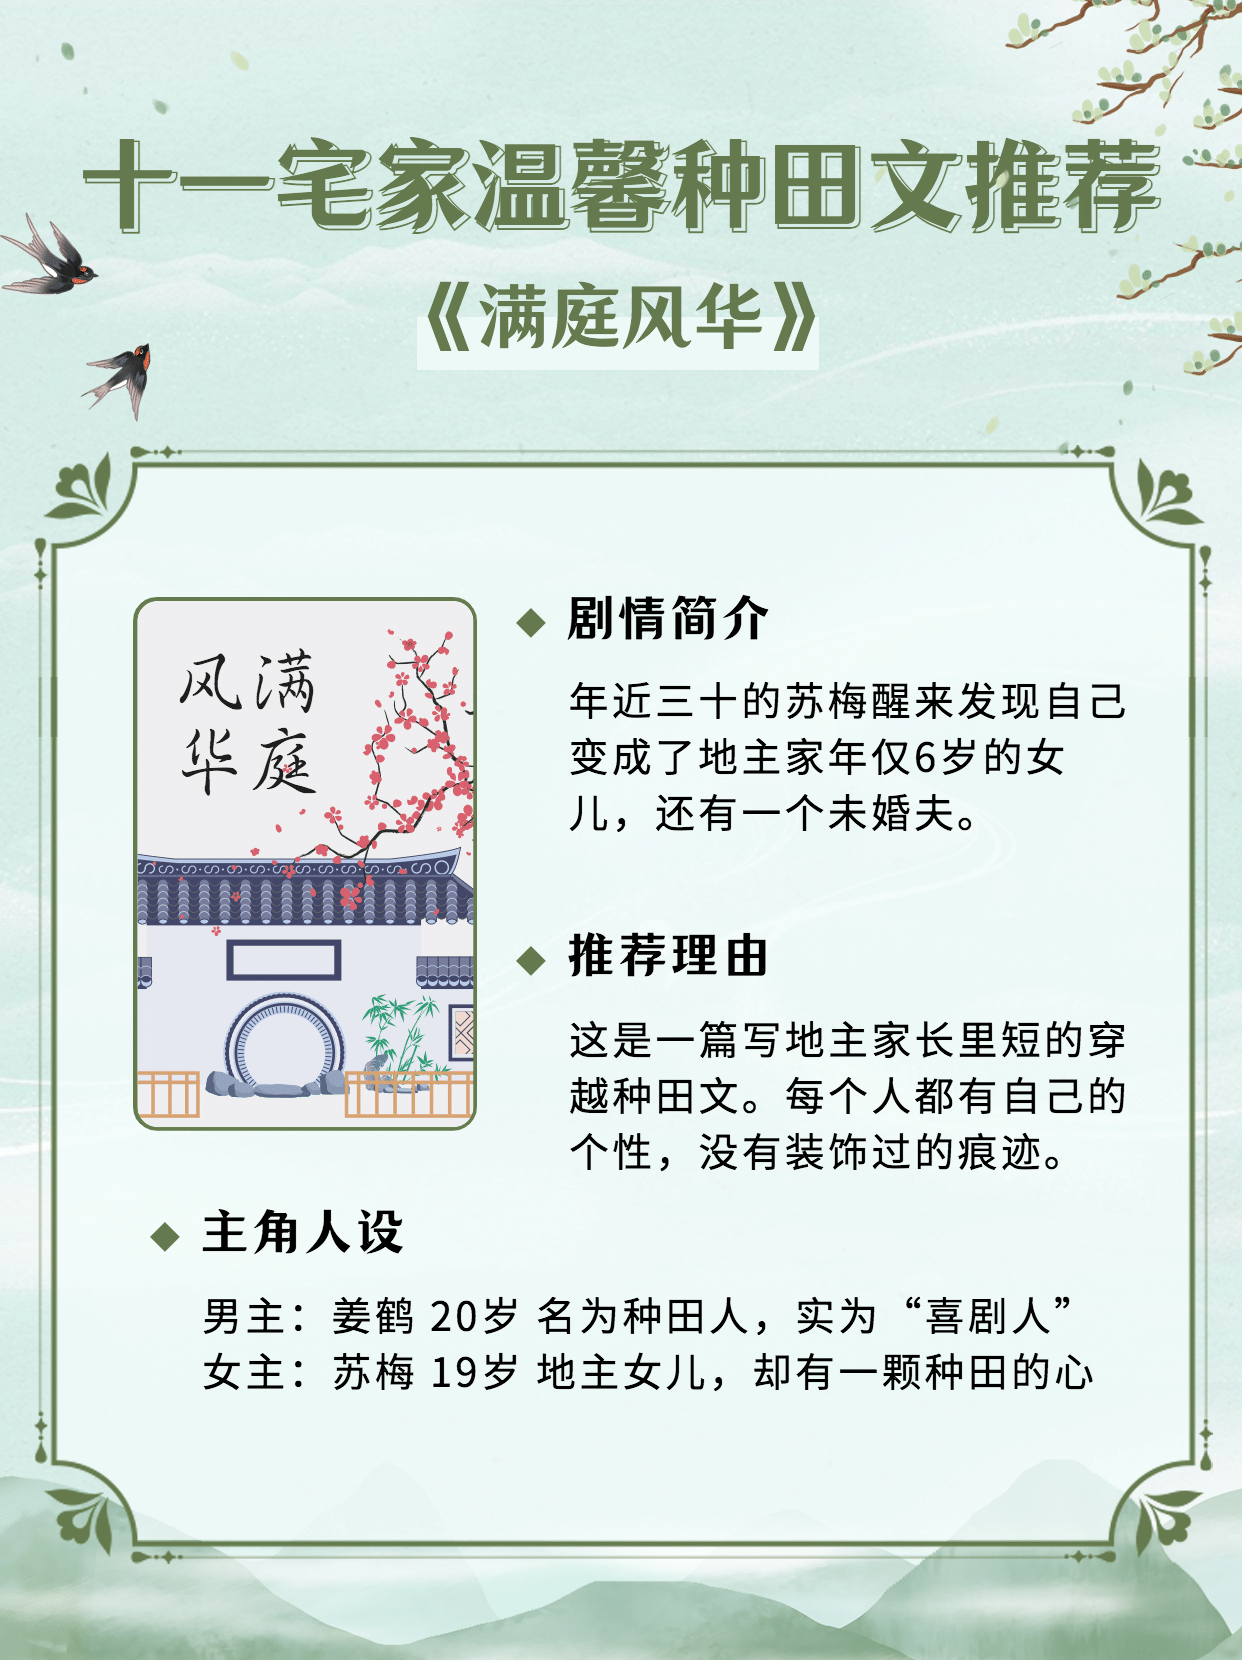 国庆节古风小说推荐小红书封面配图预览效果